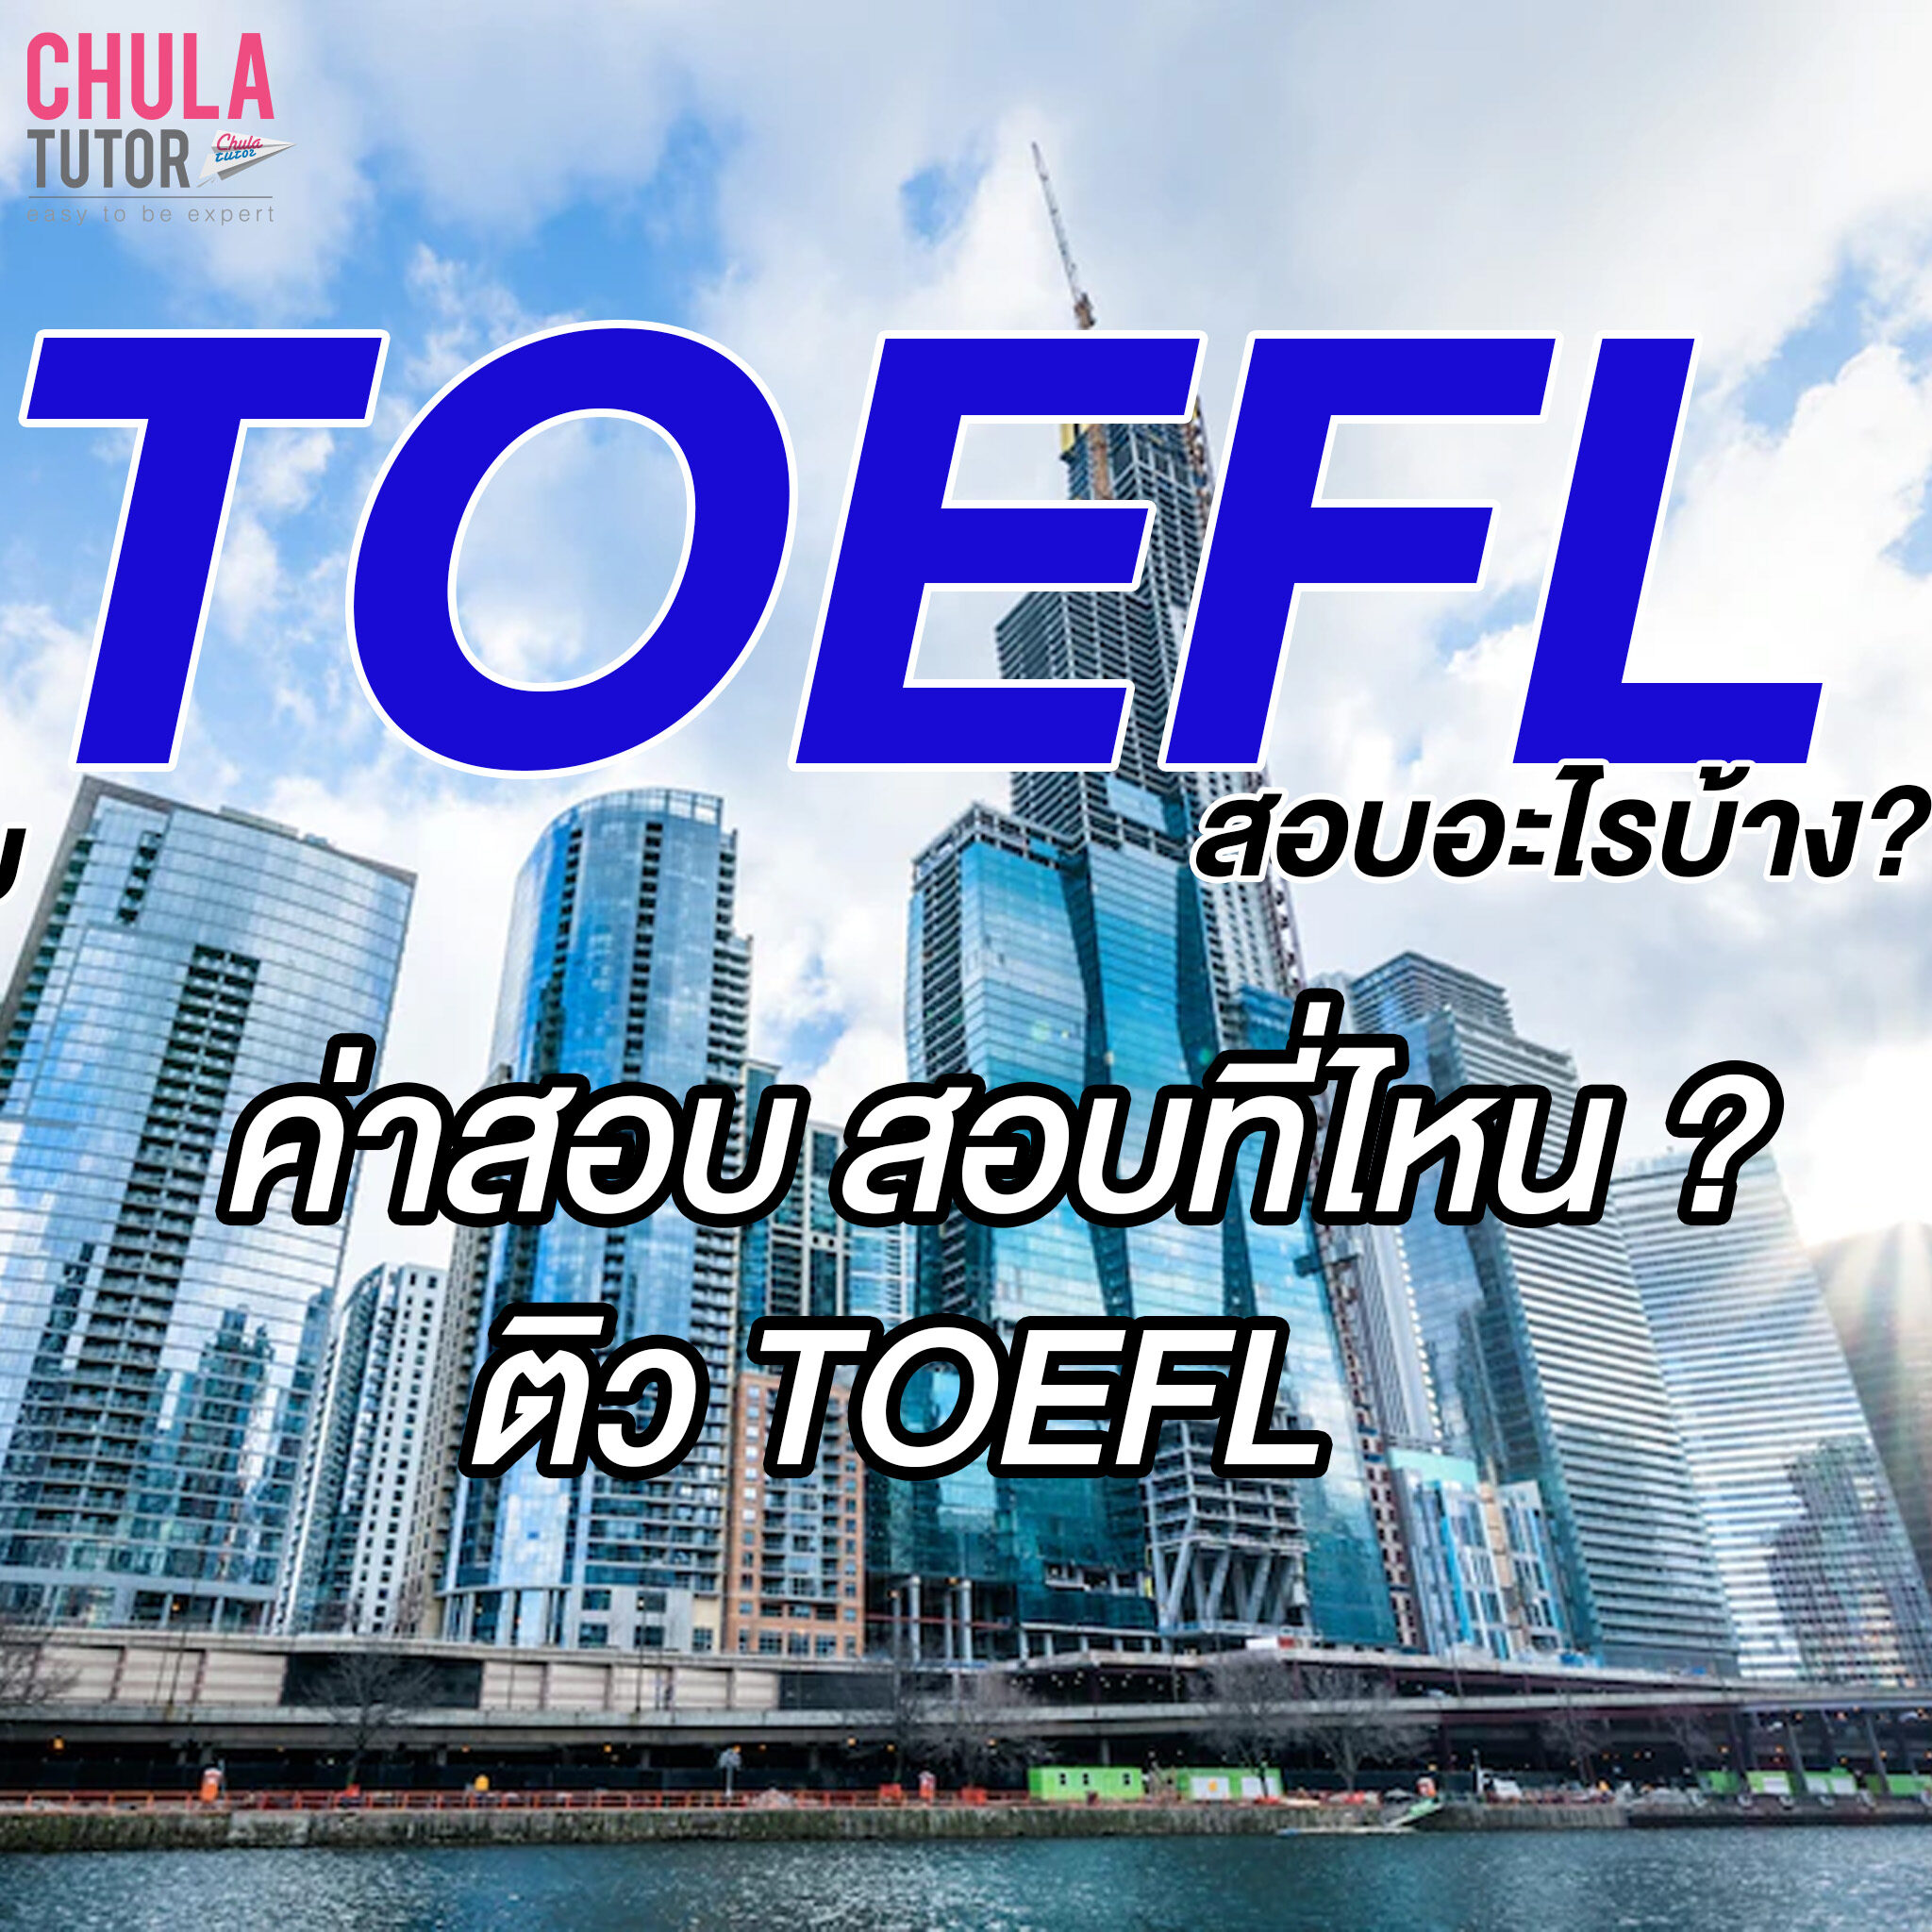 TOEFL สอบอะไรบ้าง ค่าสอบ สอบที่ไหน? ติว TOEFL